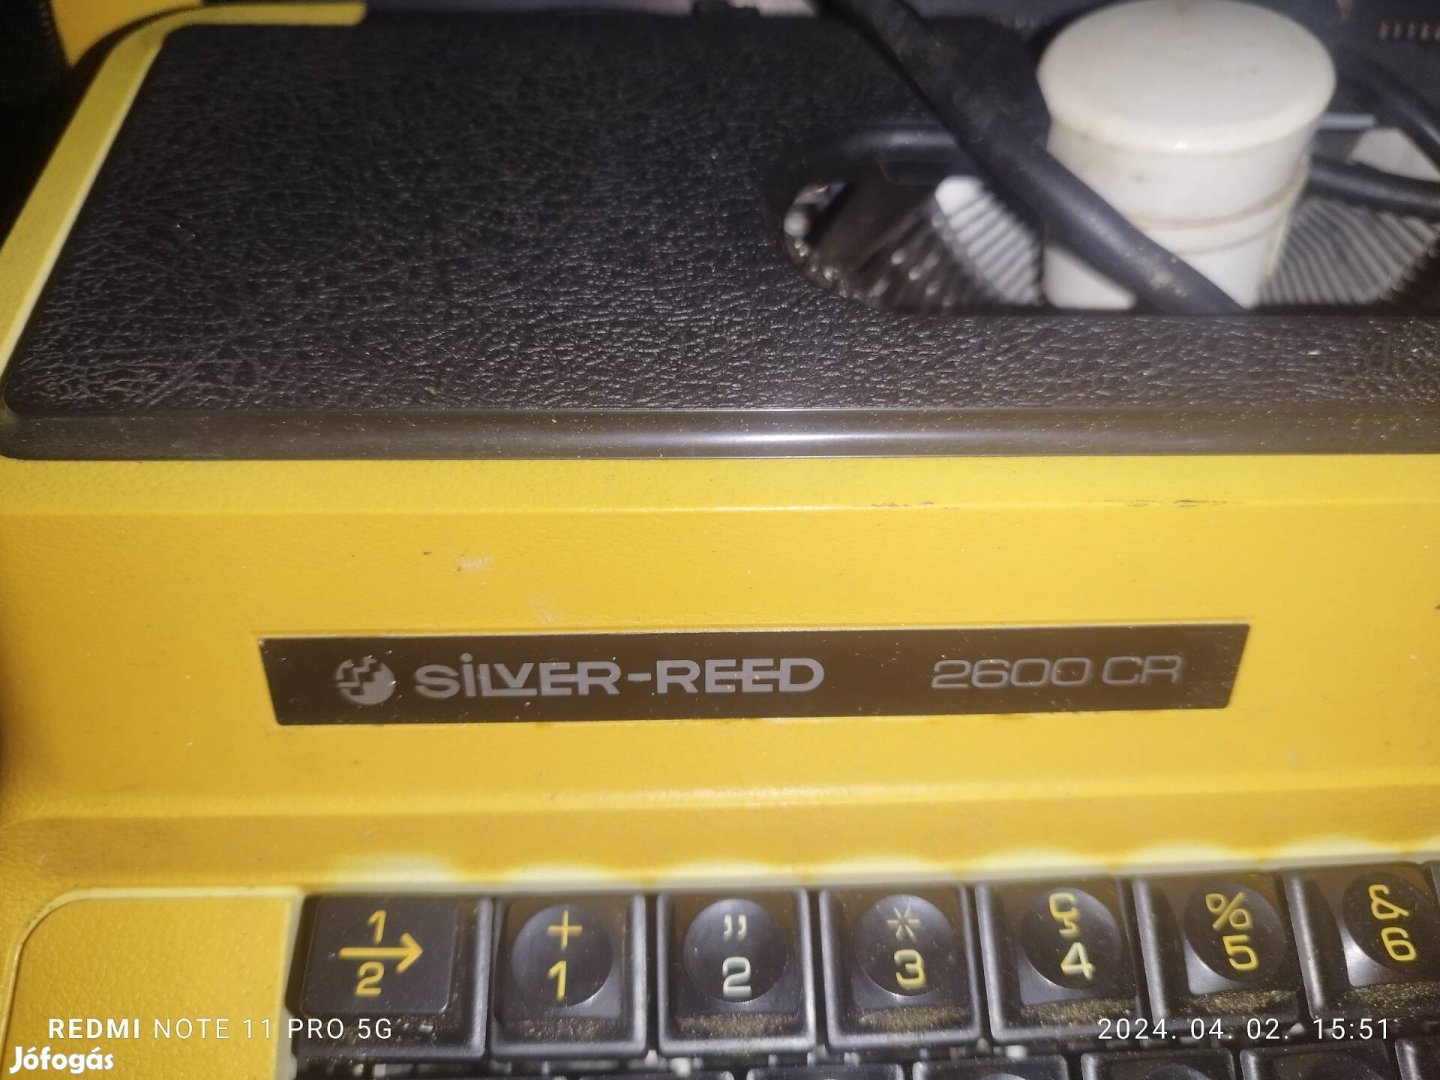 Silver reed 2600 cr író gép 